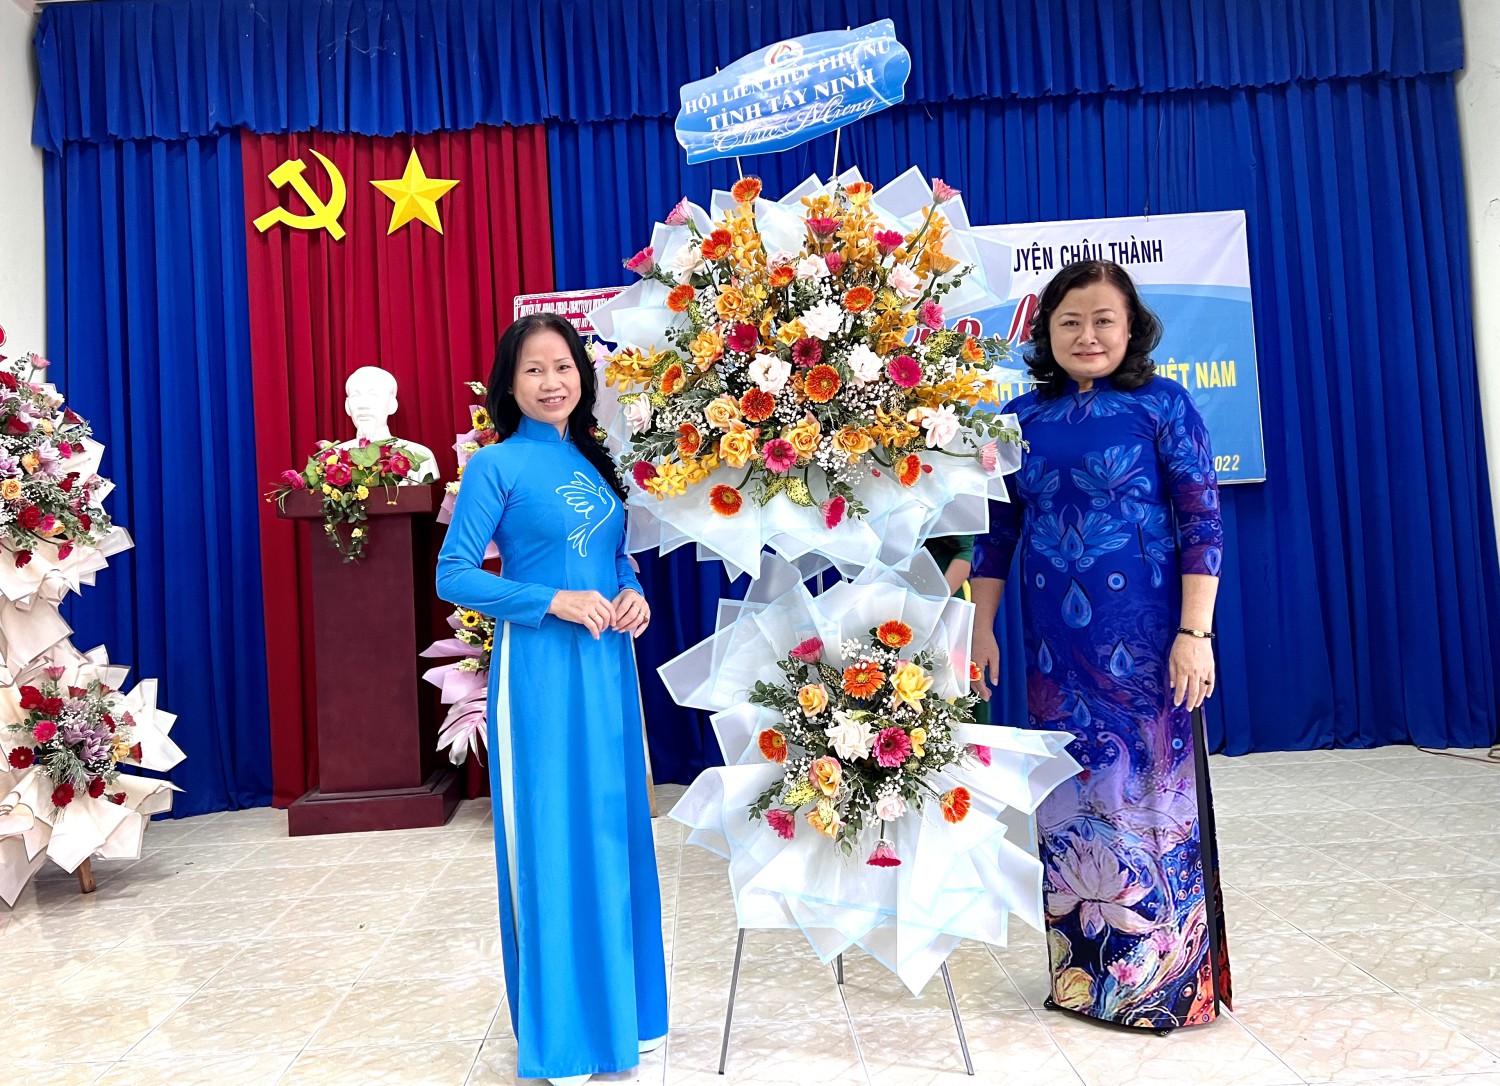 Châu Thành: Họp mặt kỷ niệm 92 năm ngày thành lập hội LHPN Việt Nam